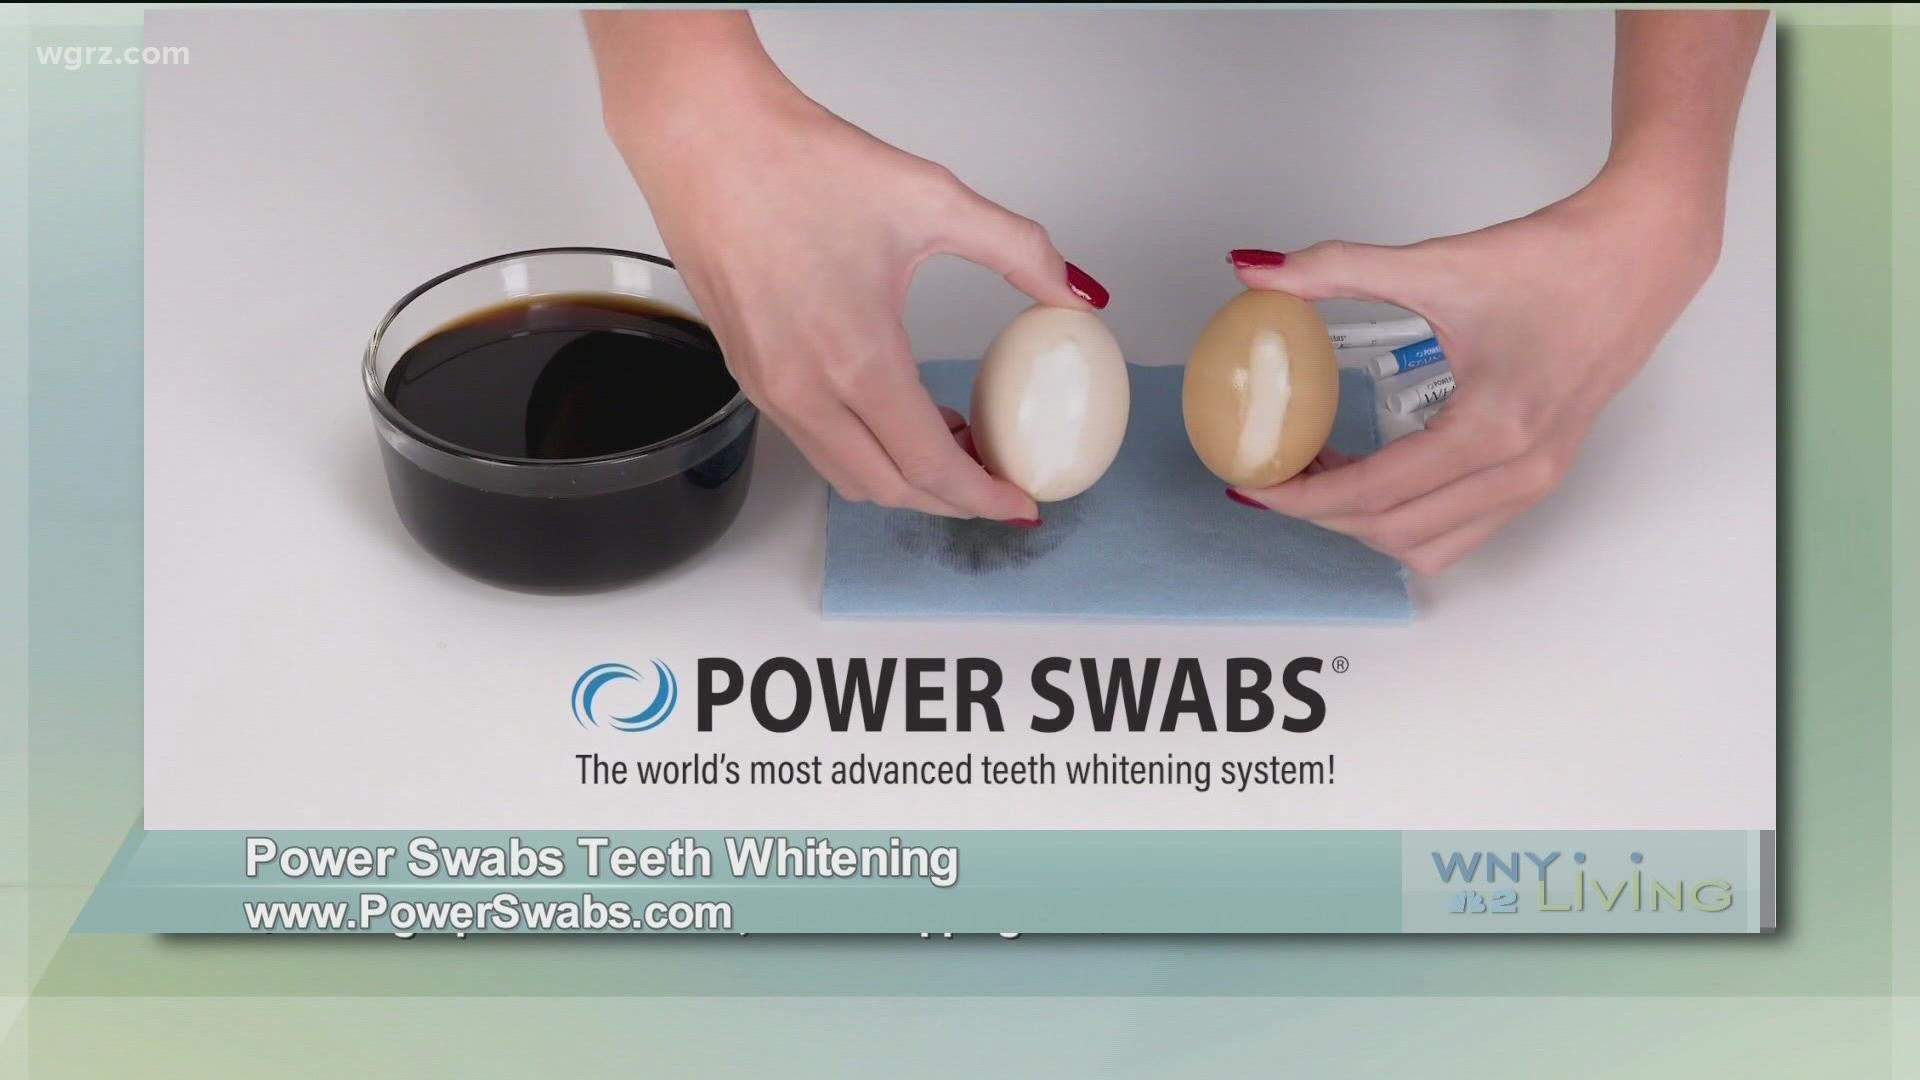 WNY Living - December 4 - Power Swabs Teeth Whitening (THIS VIDEO IS SPONSORED BY POWER SWABS TEETH WHITENING)